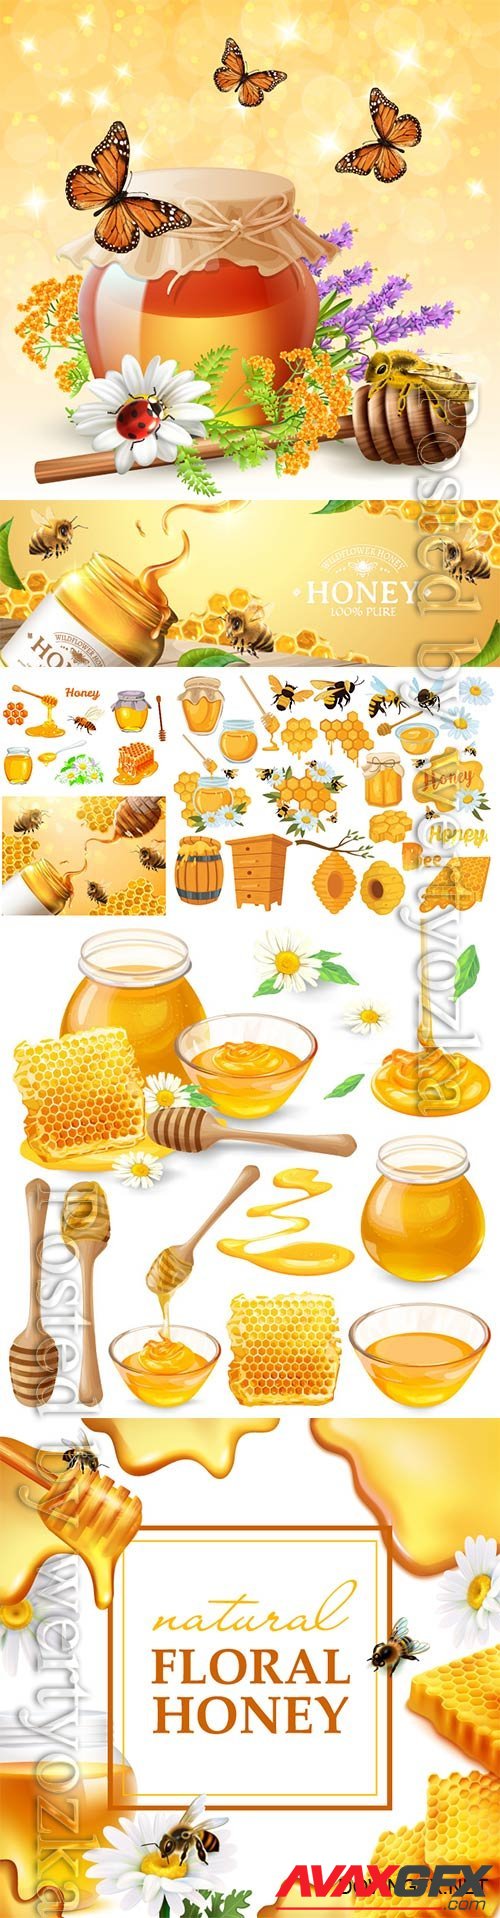 Honey set, honeycombs, bee, honey in glass jar, wooden honey dipper, honey in metal spoon and flowers